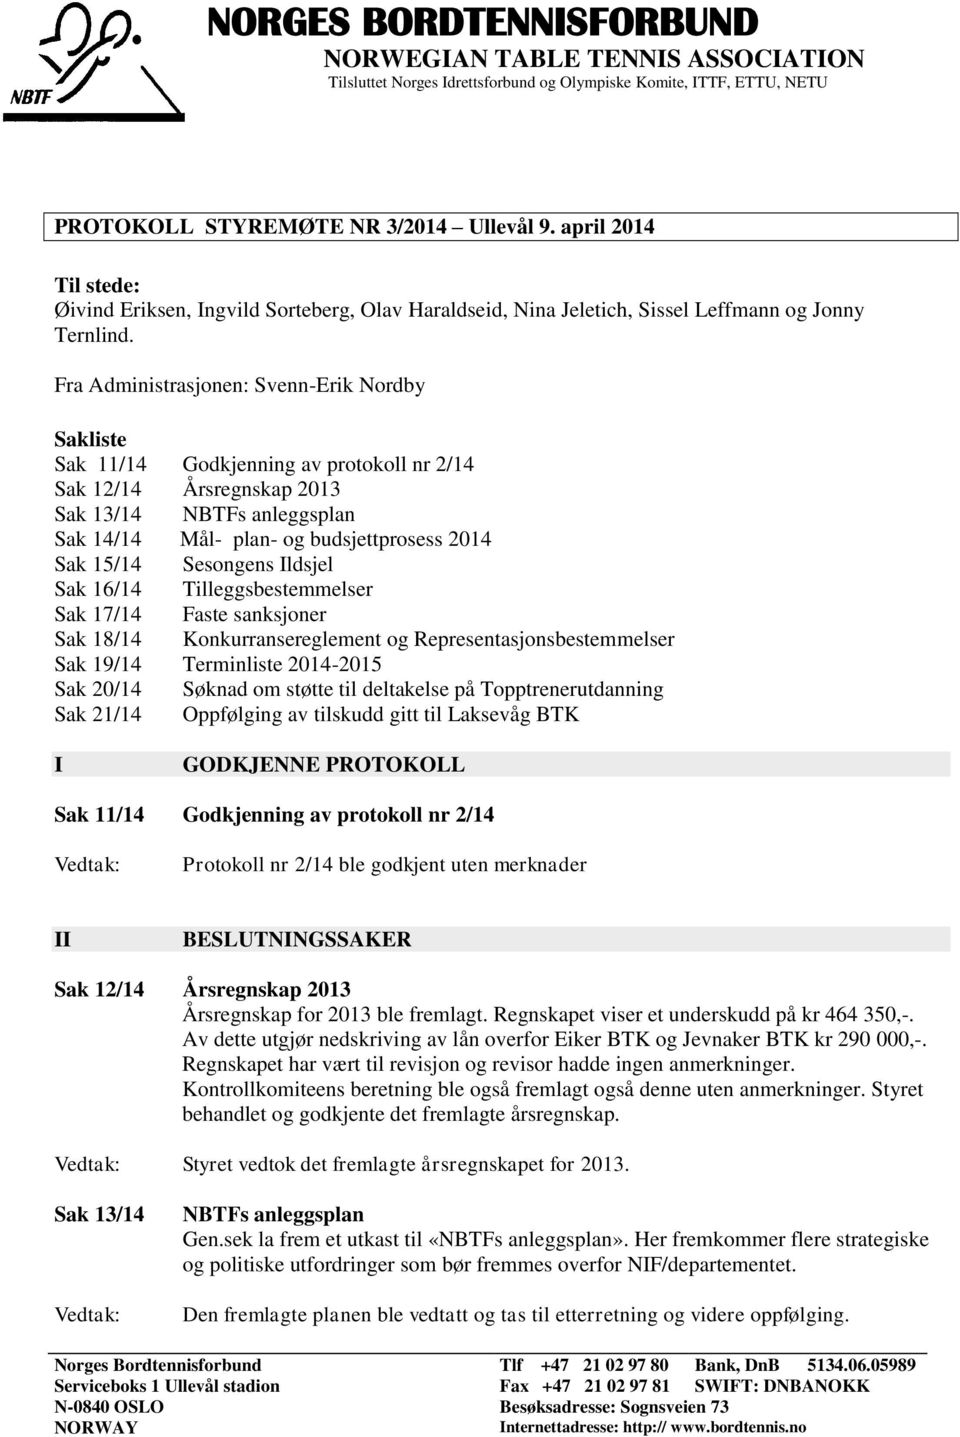 Fra Administrasjonen: Svenn-Erik Nordby Sakliste Sak 11/14 Godkjenning av protokoll nr 2/14 Sak 12/14 Årsregnskap 2013 Sak 13/14 NBTFs anleggsplan Sak 14/14 Mål- plan- og budsjettprosess 2014 Sak